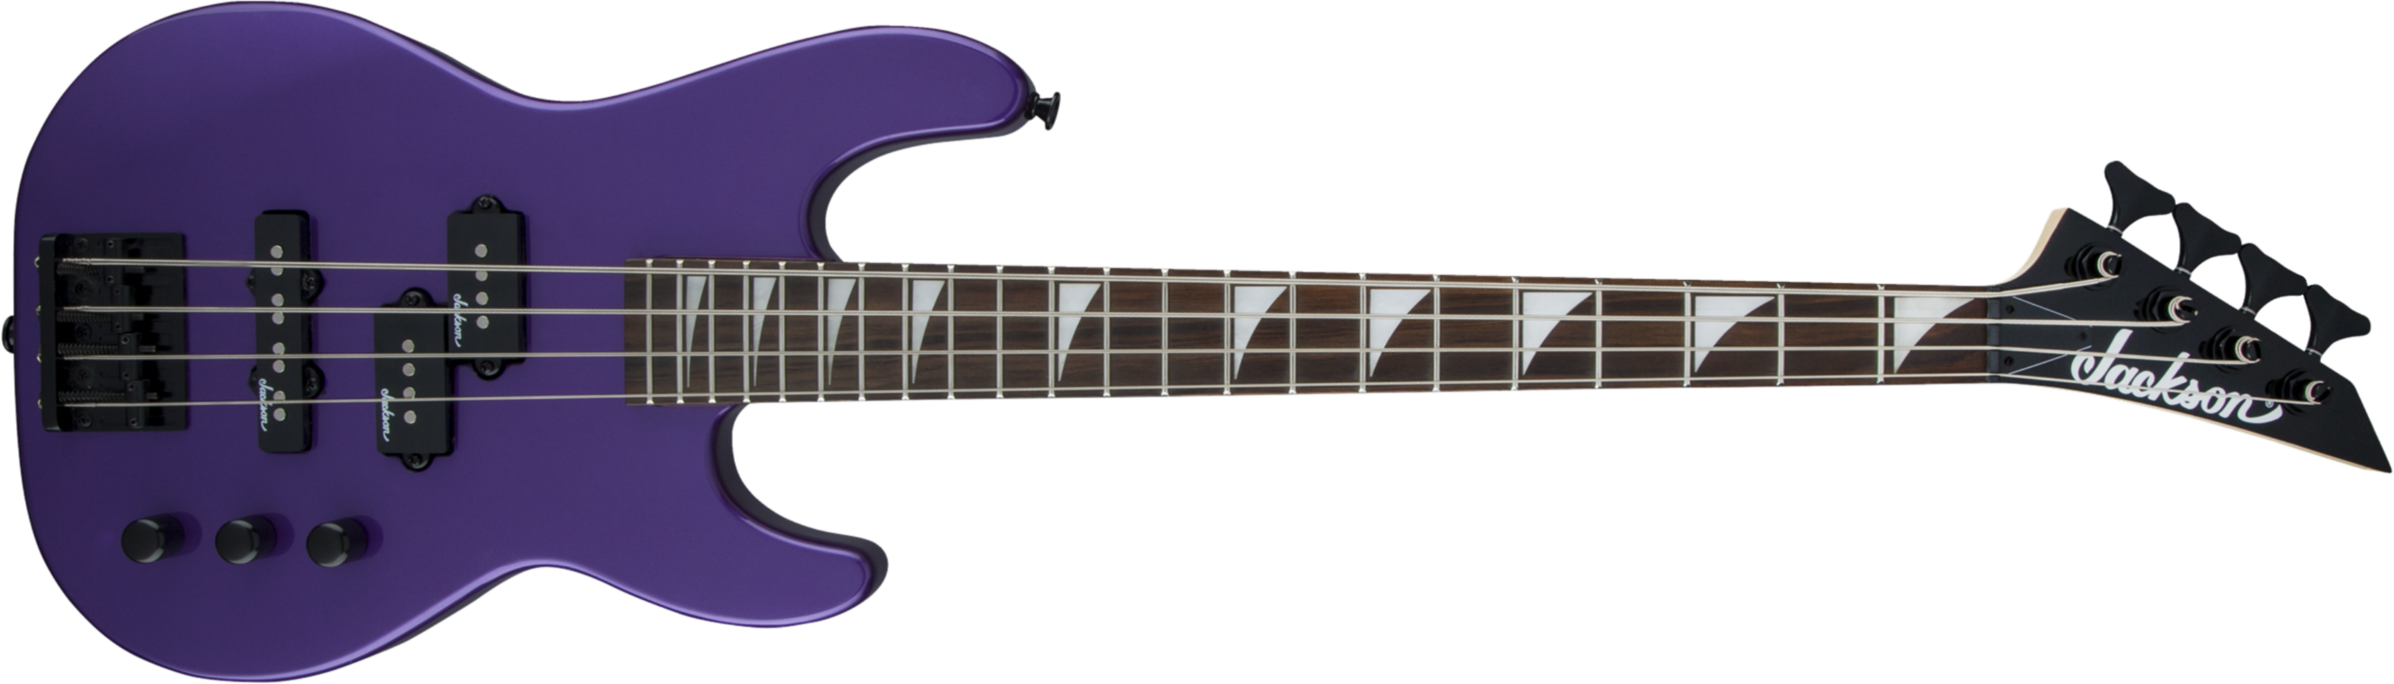 Jackson Js Series Concert Bass Minion Js1x - Pavo Purple - Short scale elektrische bas - Main picture